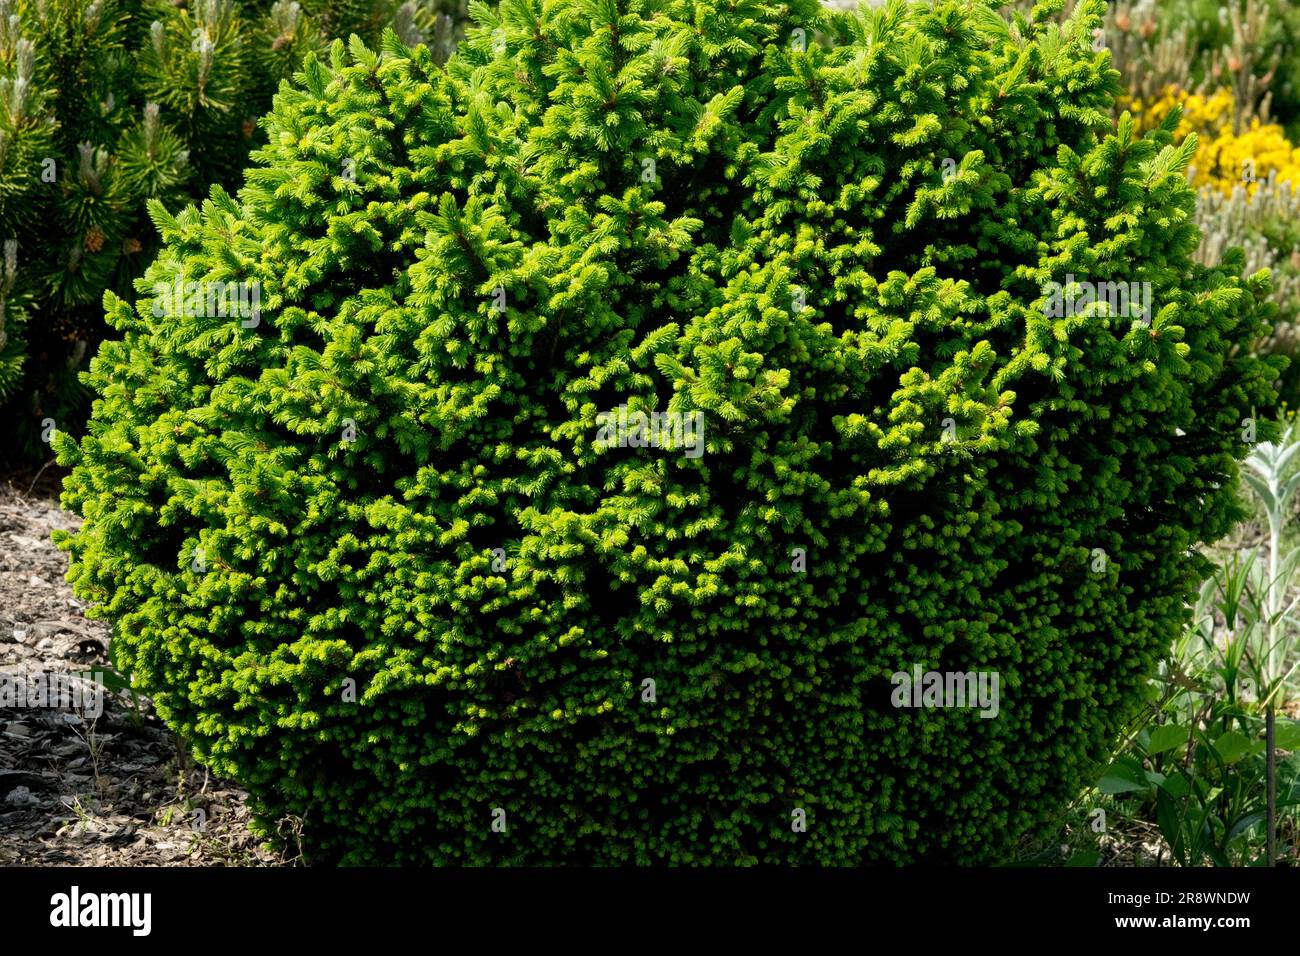 Picea abies, épinette de Norvège, Picea abies 'Luna Pearl' Compact, cultivar, dense, épinette, arbre, Evergreen, épicéa européen dans le jardin Banque D'Images